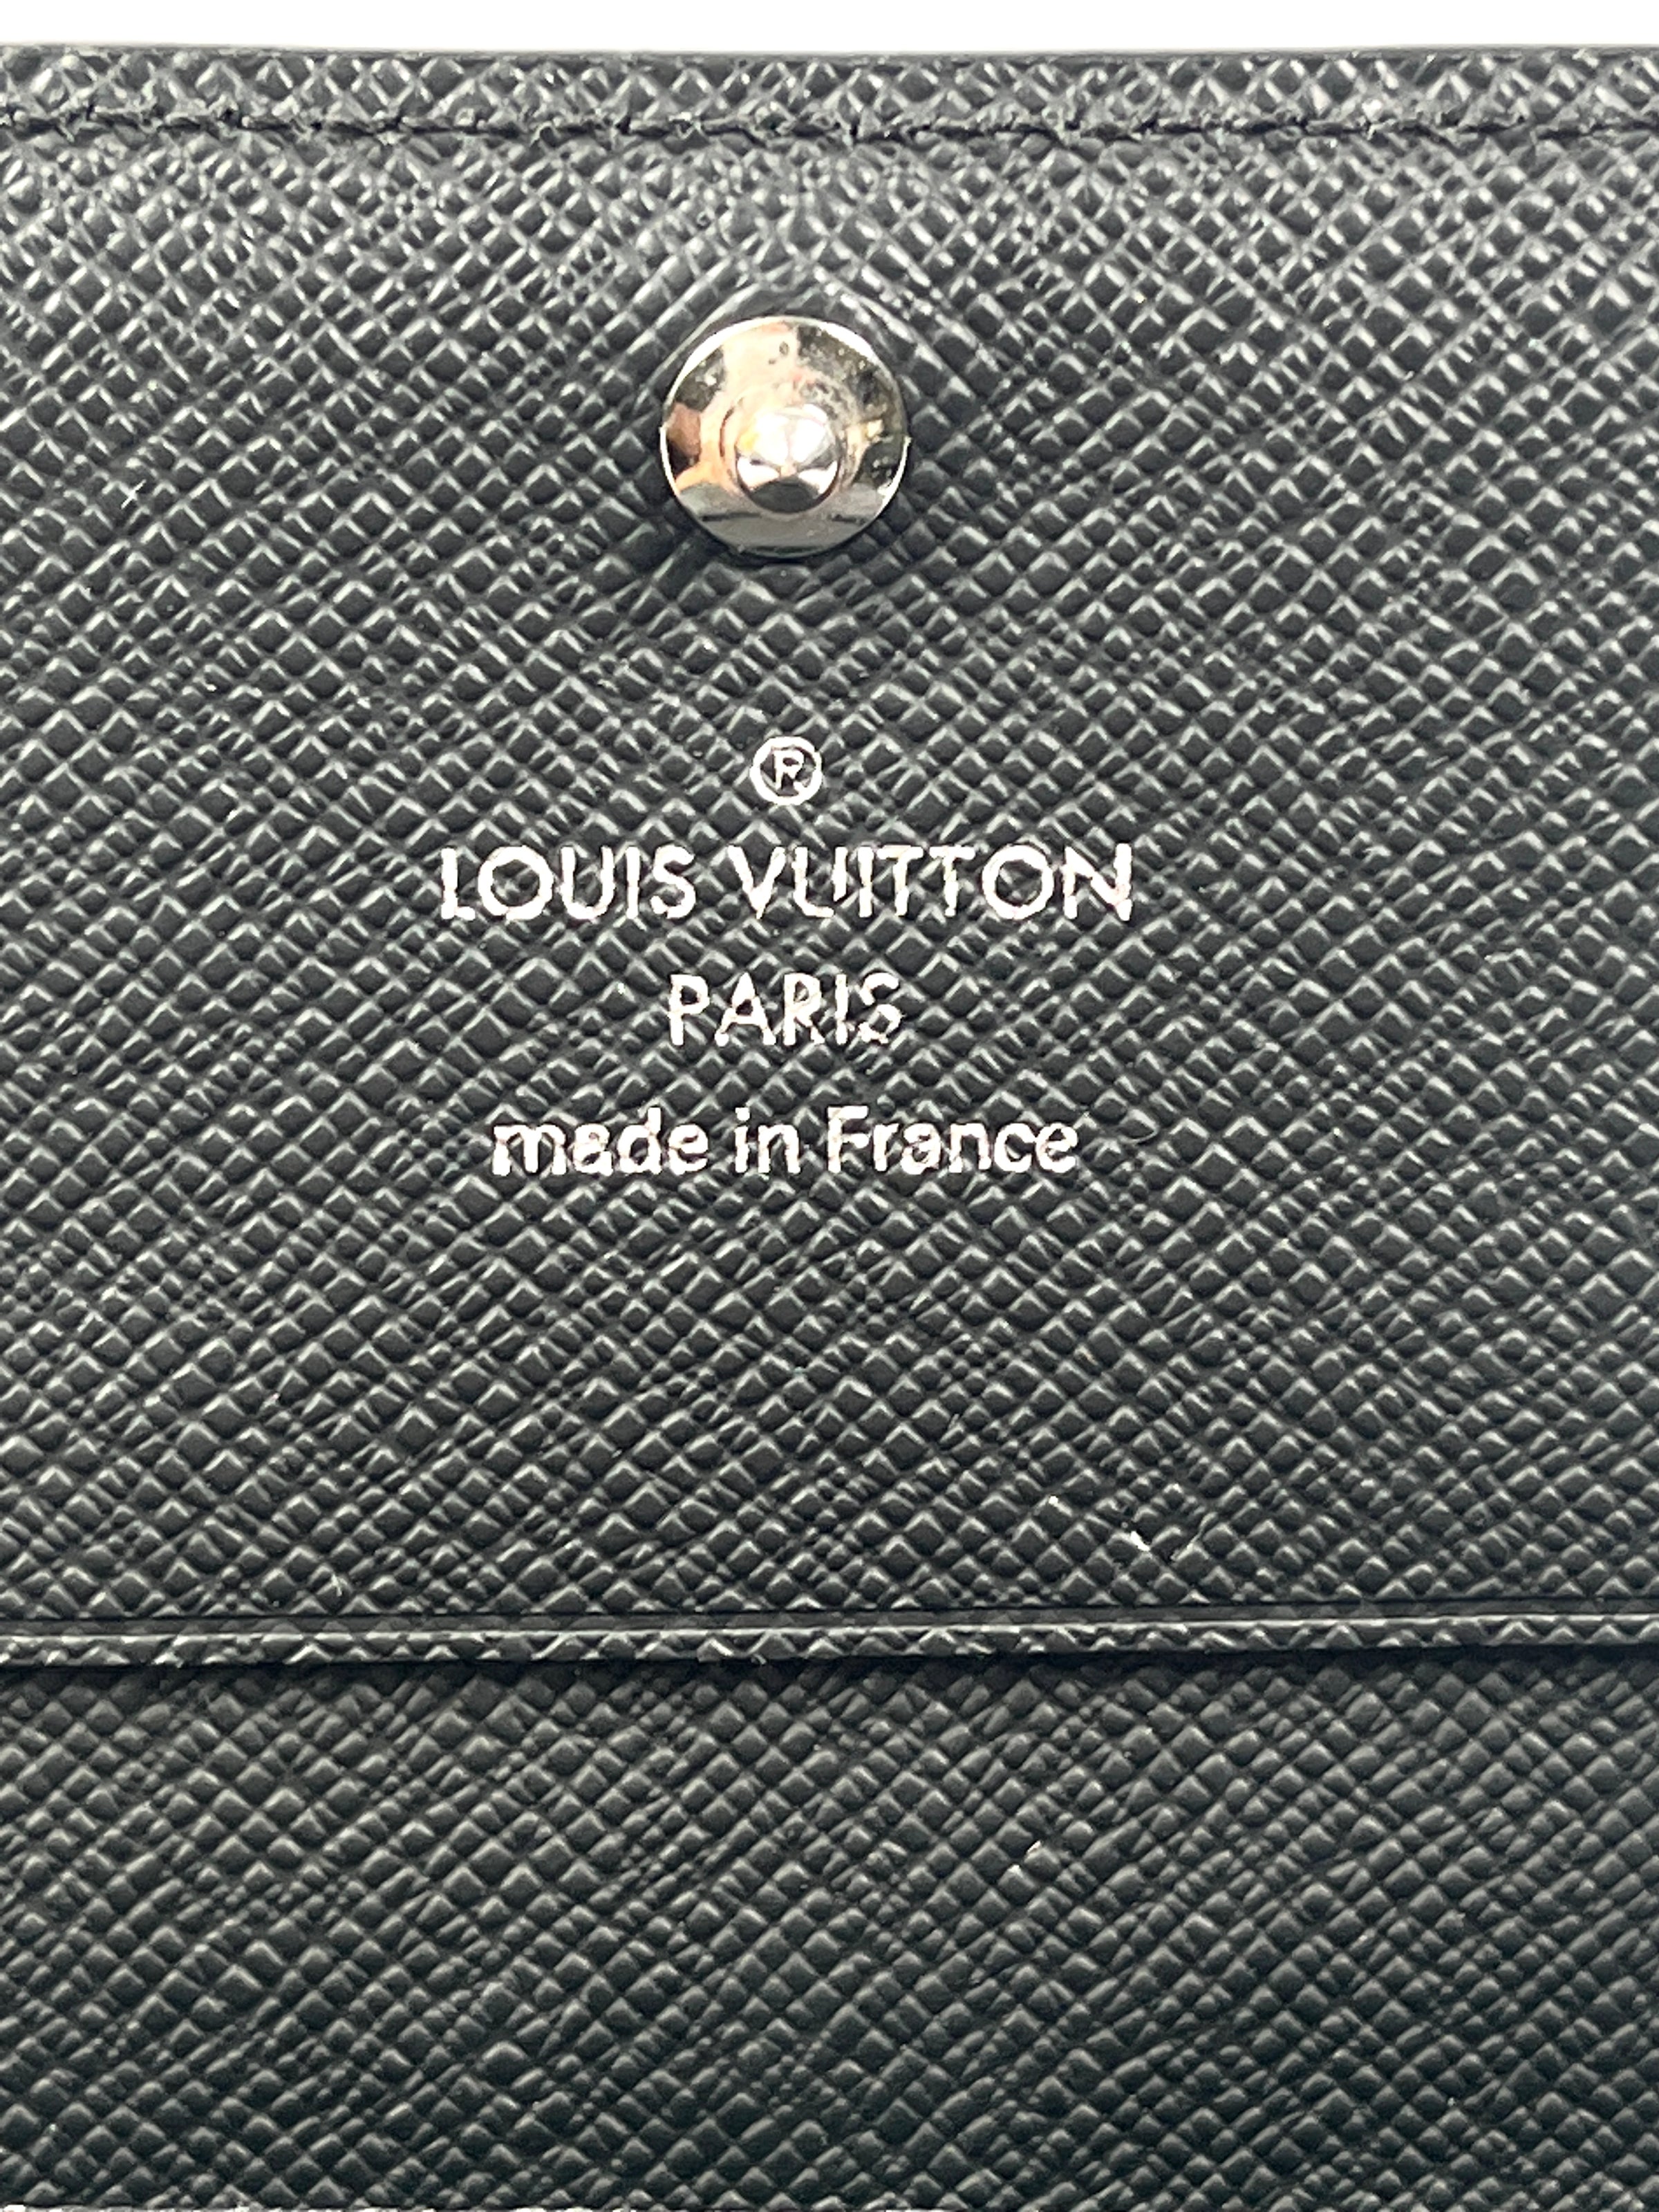 Louis Vuitton Enveloppe Carte de Visite